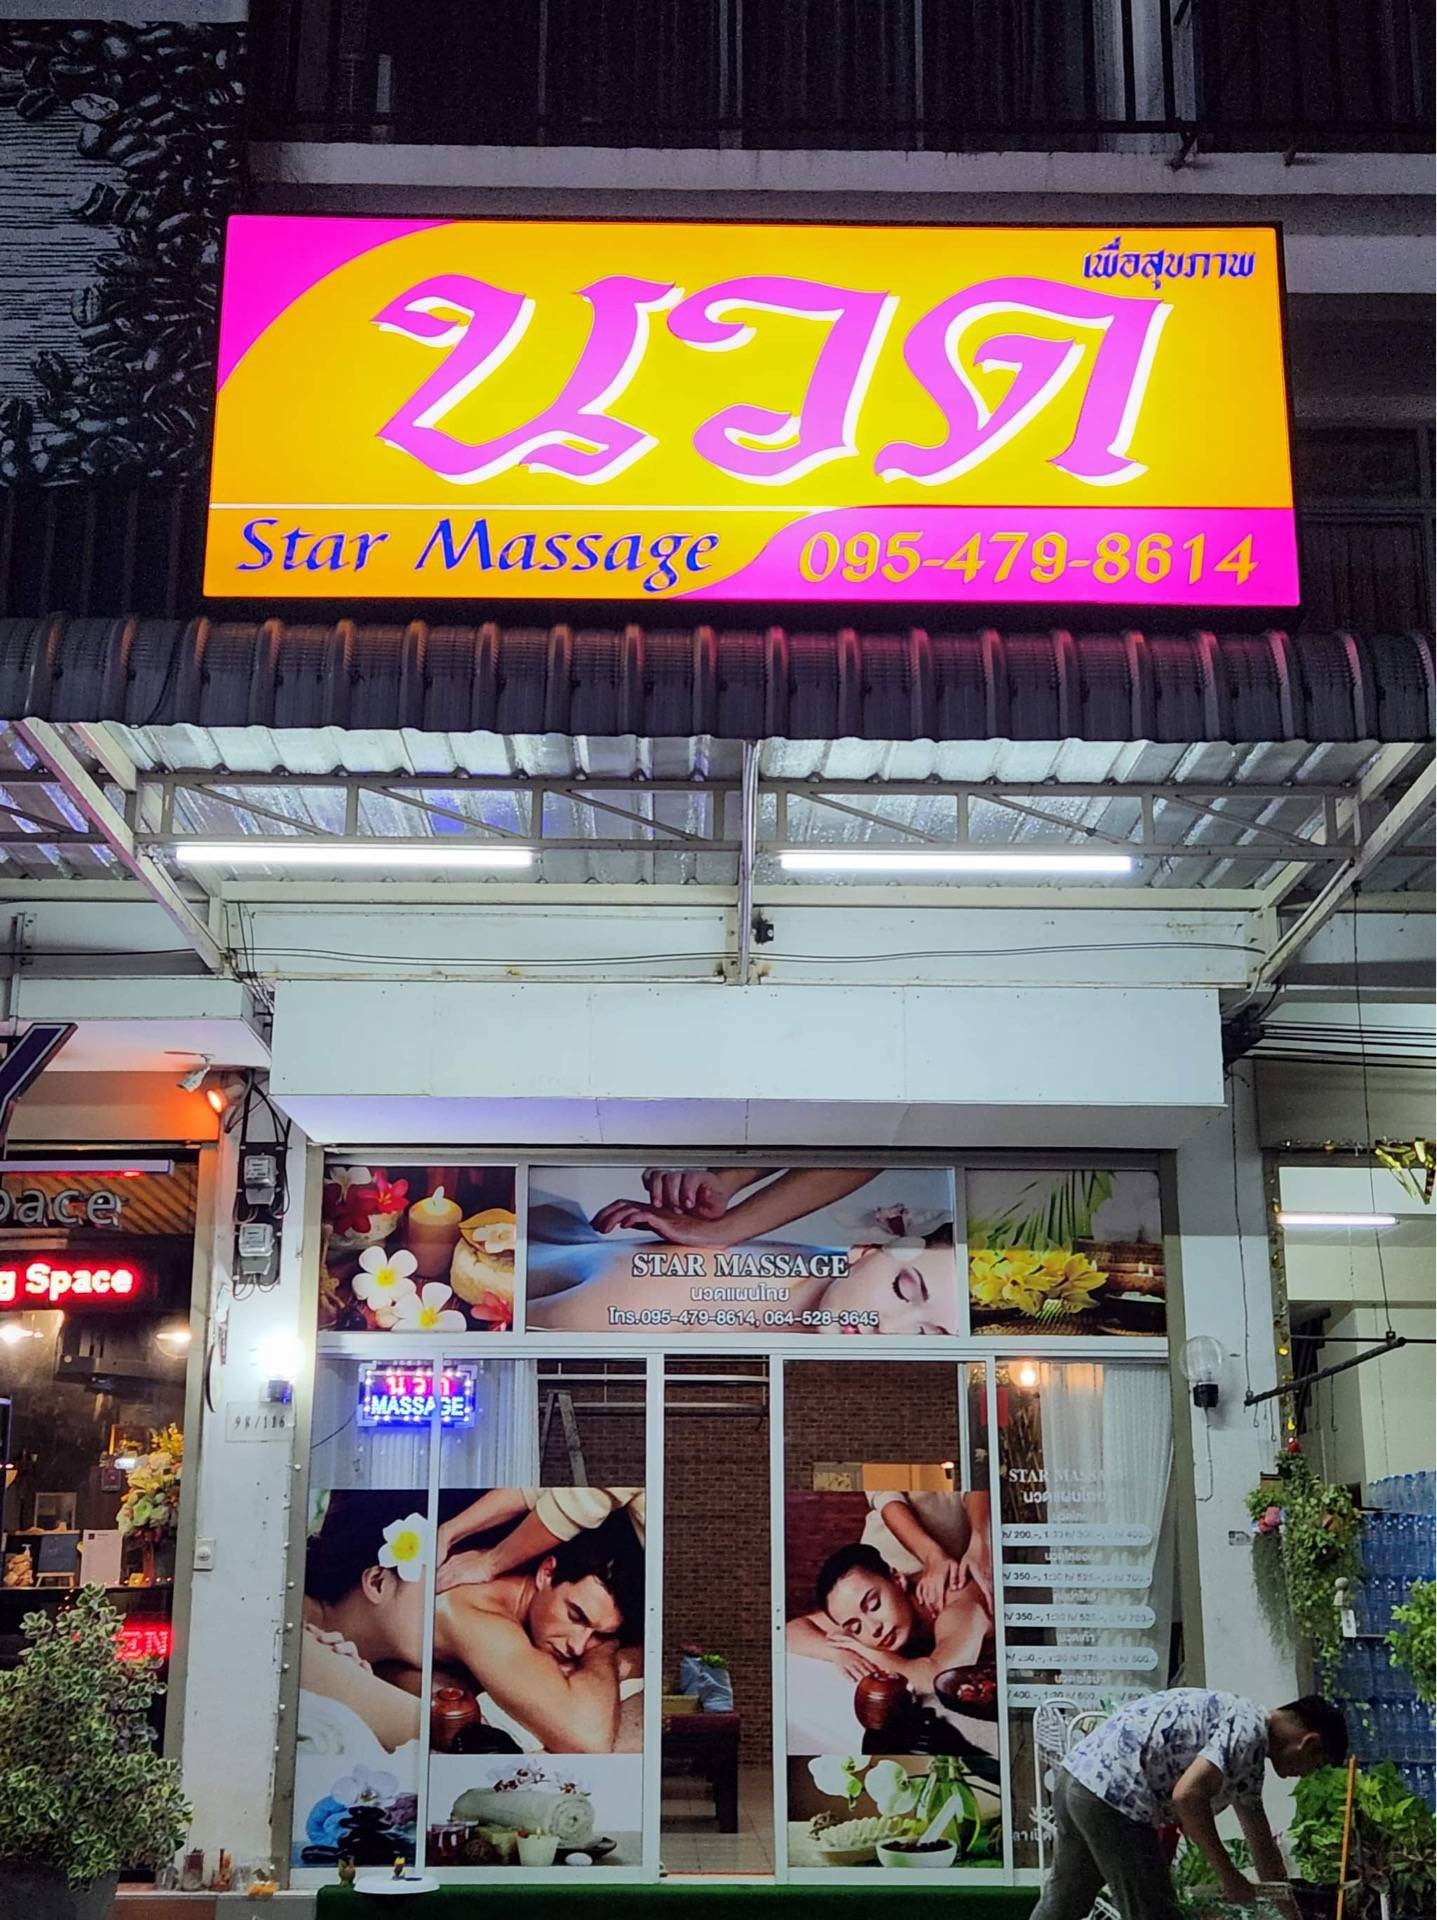 รีวิว Star ⭐️ Massages ตลาดลาดสวายร้านนวด สตาร์มาสสาจ หมอนวดดี นวดแล้วรู้สึกสบายตัวมากครับ 8012